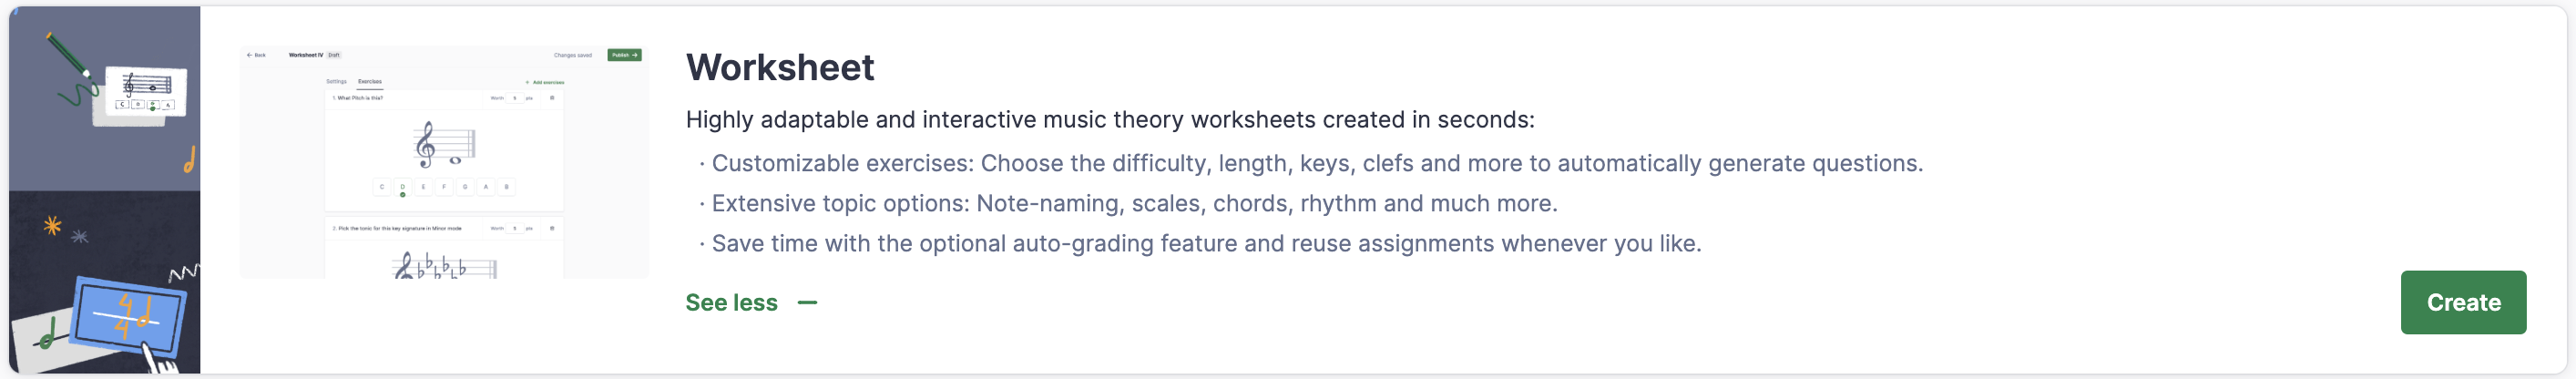 Create a worksheet